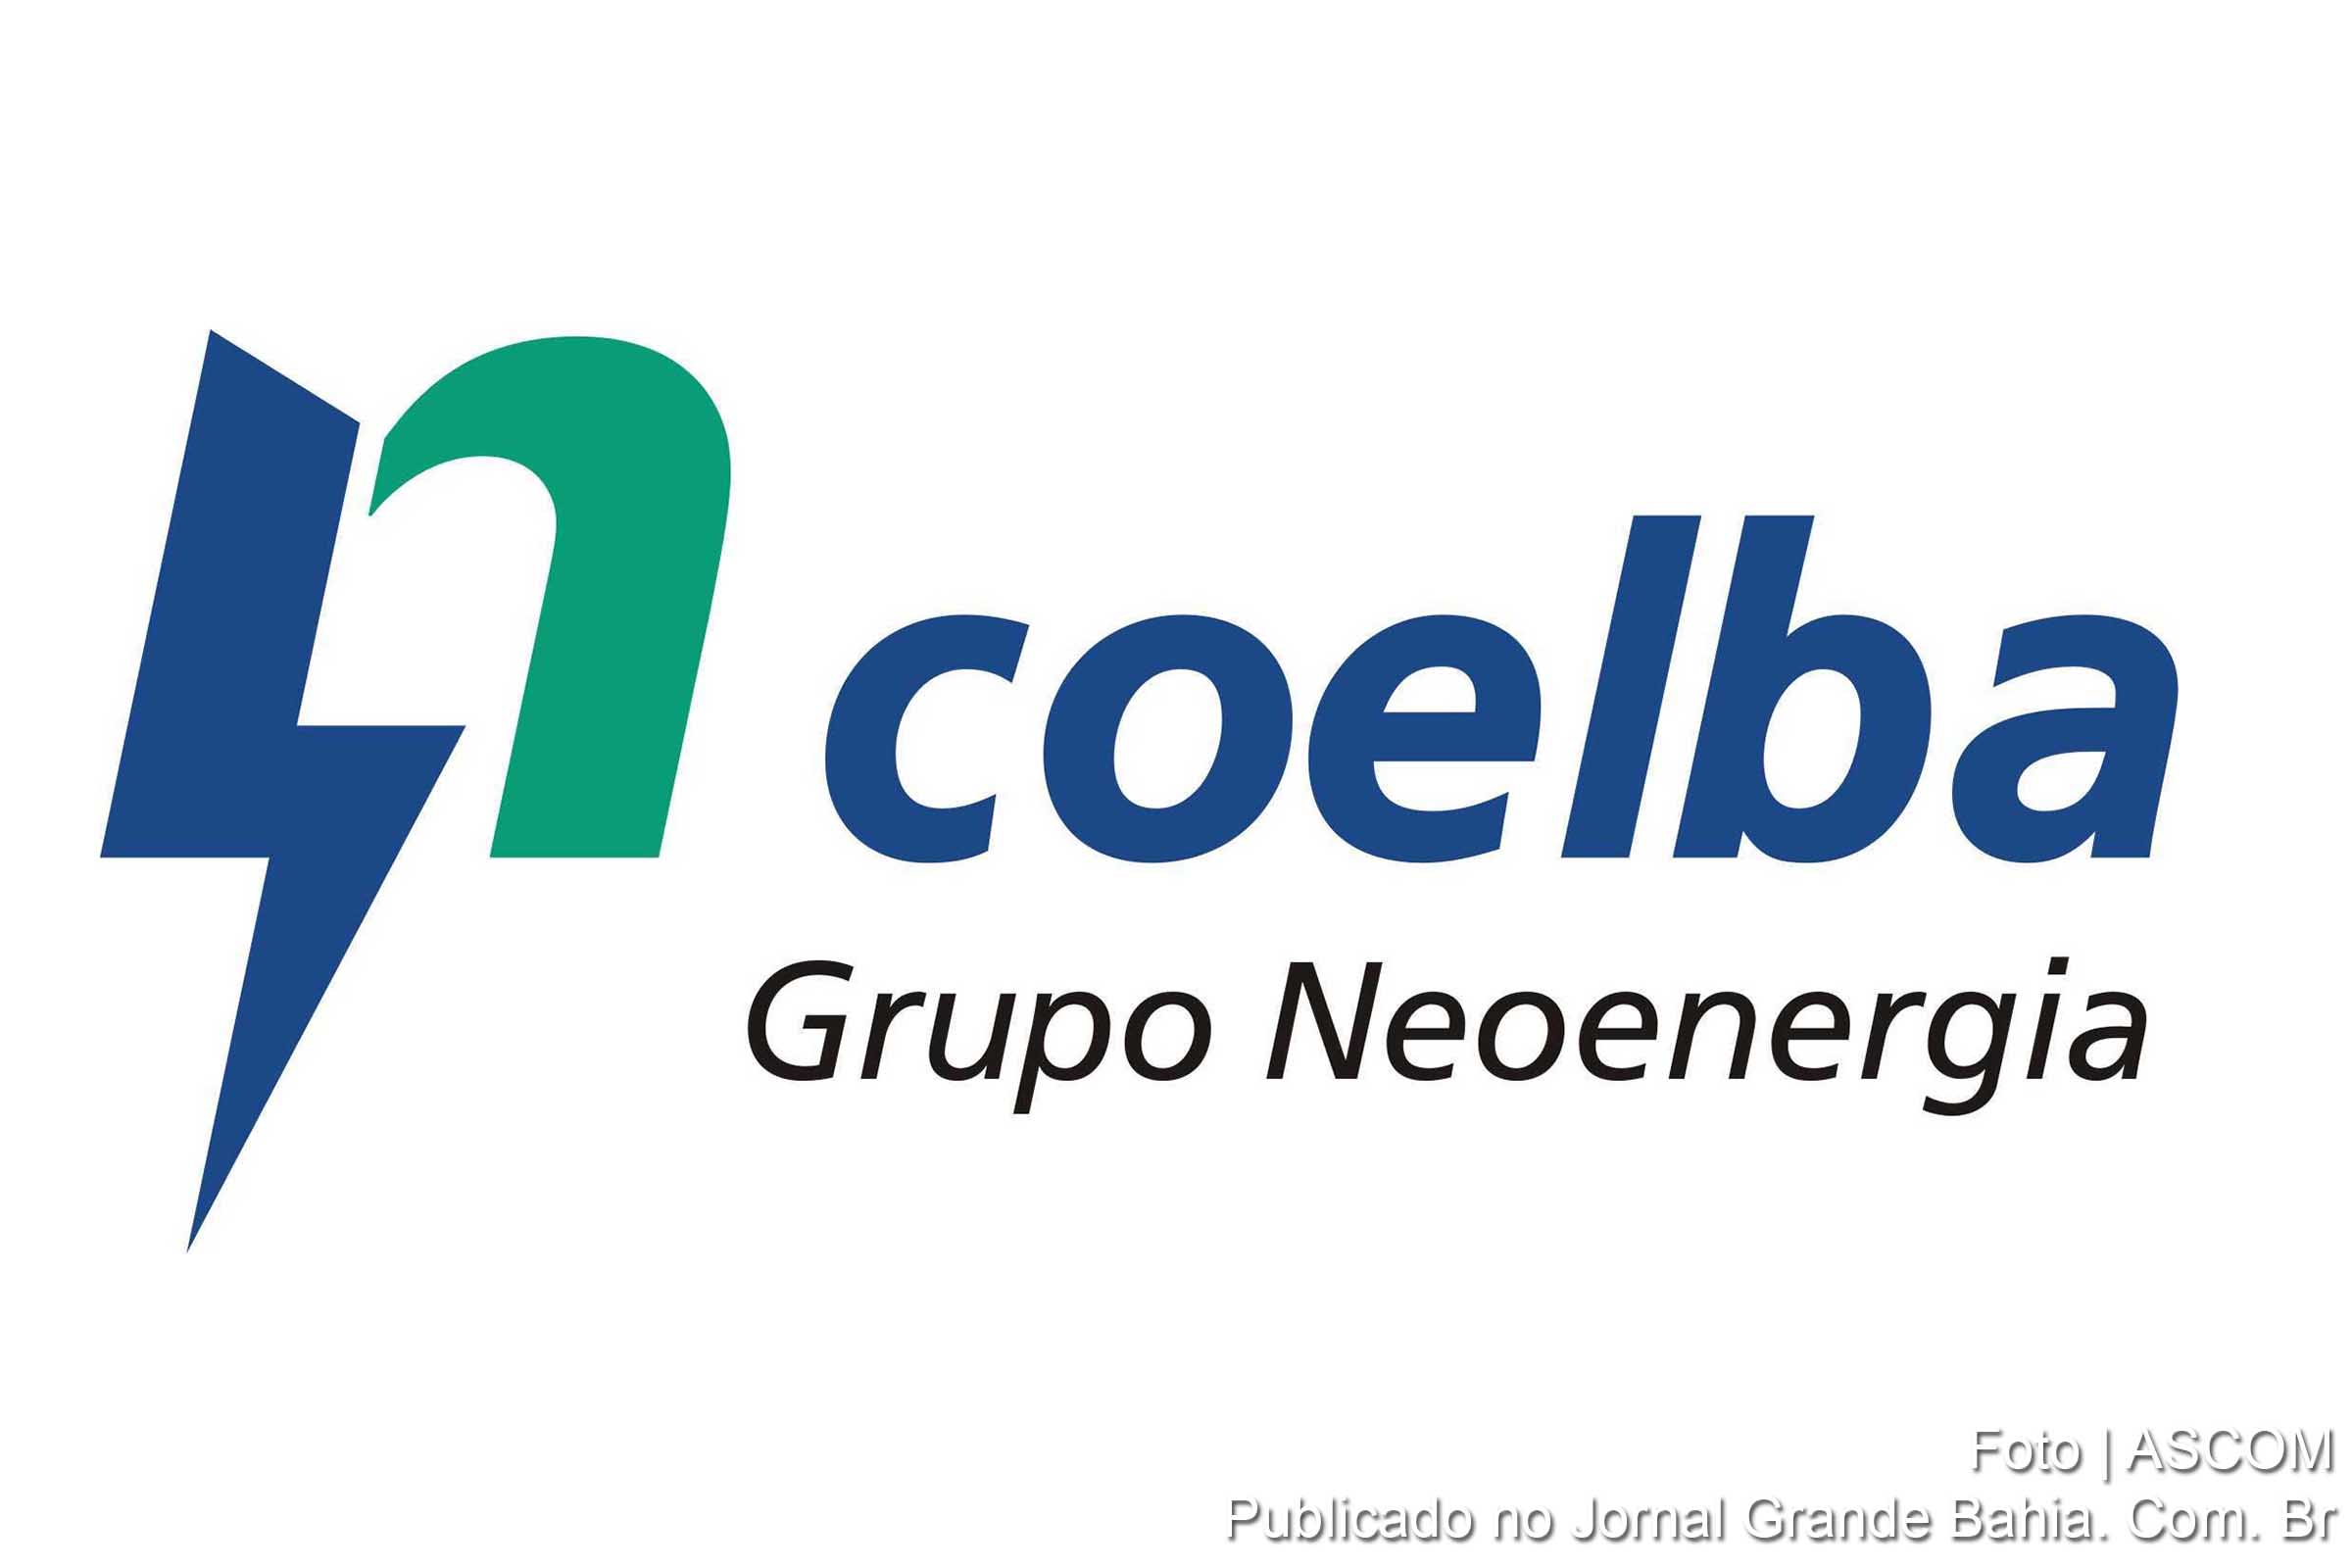 Companhia de Eletricidade do Estado da Bahia (COELBA).